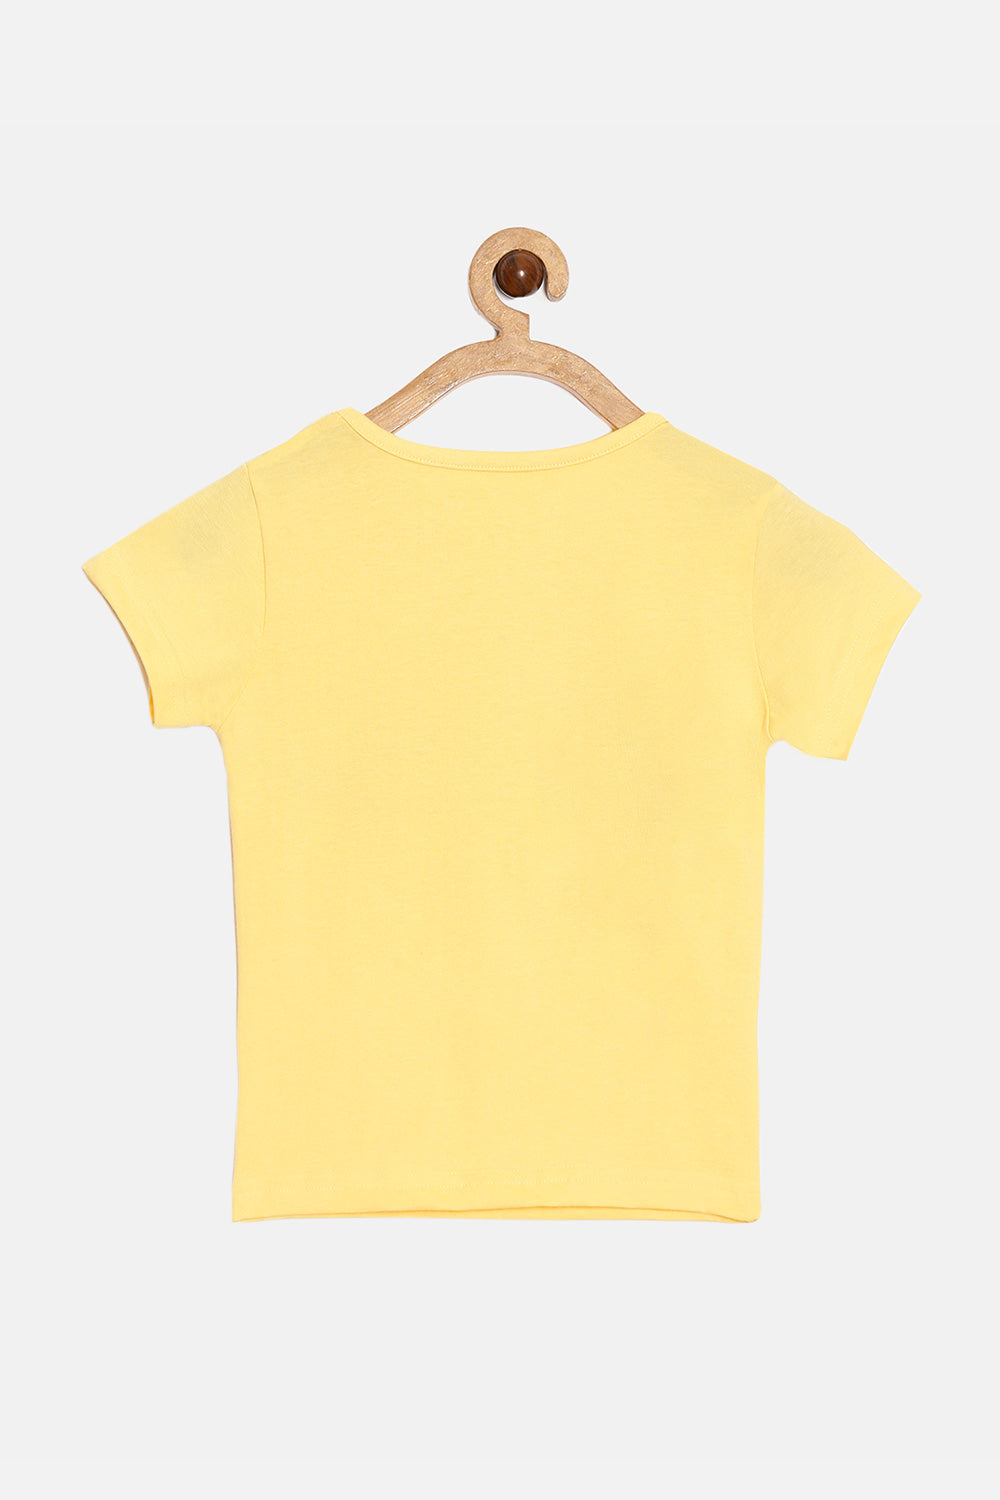 The Young Future Girls T-shirt - Yellow - SC07